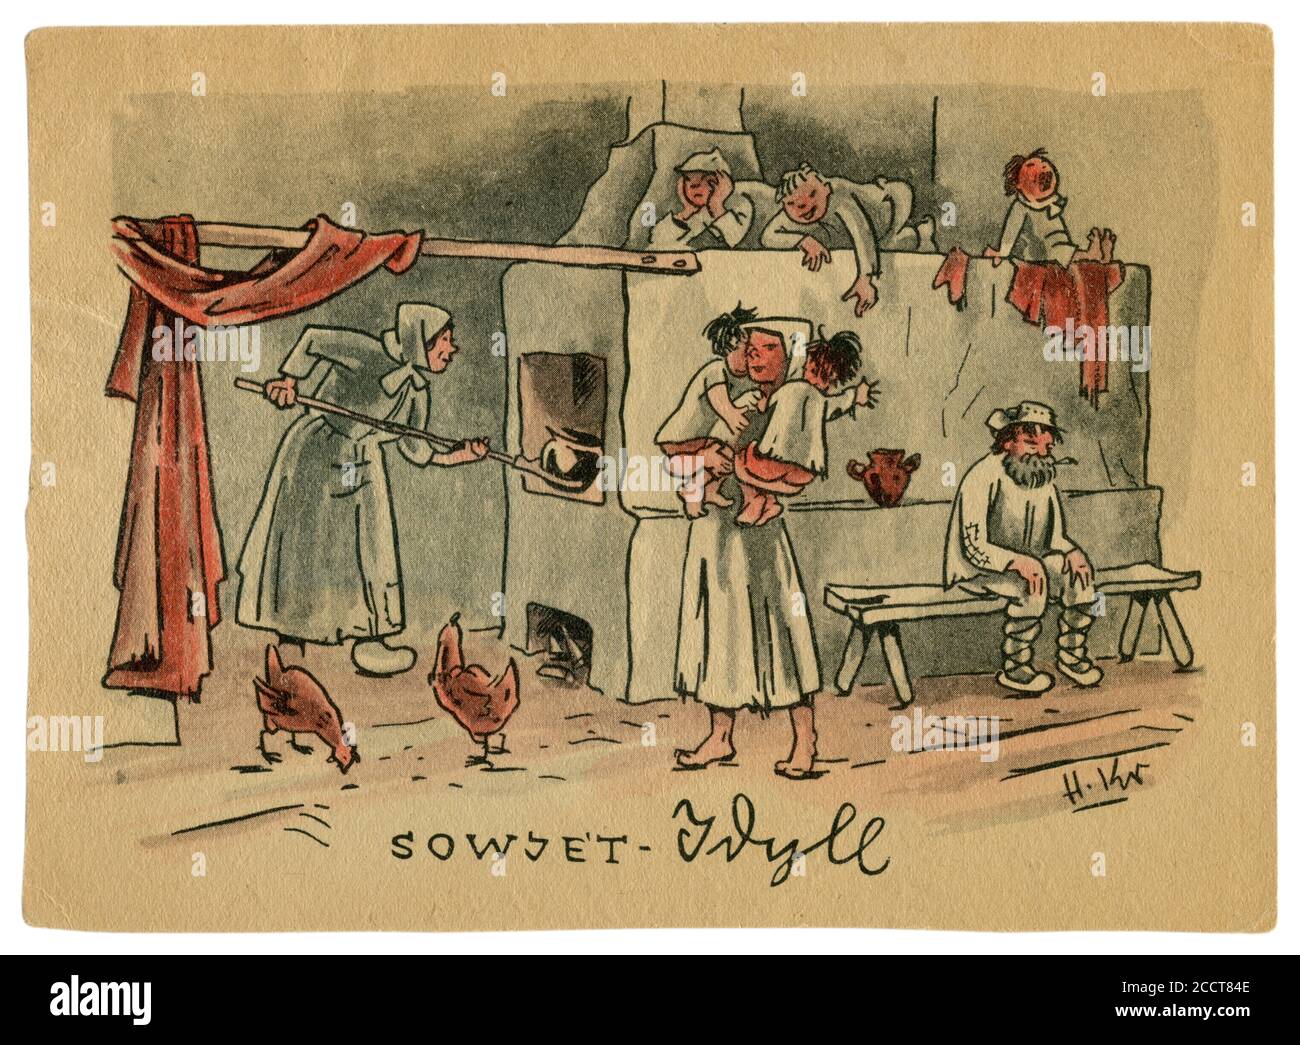 Deutsche historische Postkarte: 'Soviet Idylle'. Karikatur einer großen Familie mit Kindern in einer Hütte, in der Nähe eines russischen Ofens, der Sowjetunion, 1941 Stockfoto